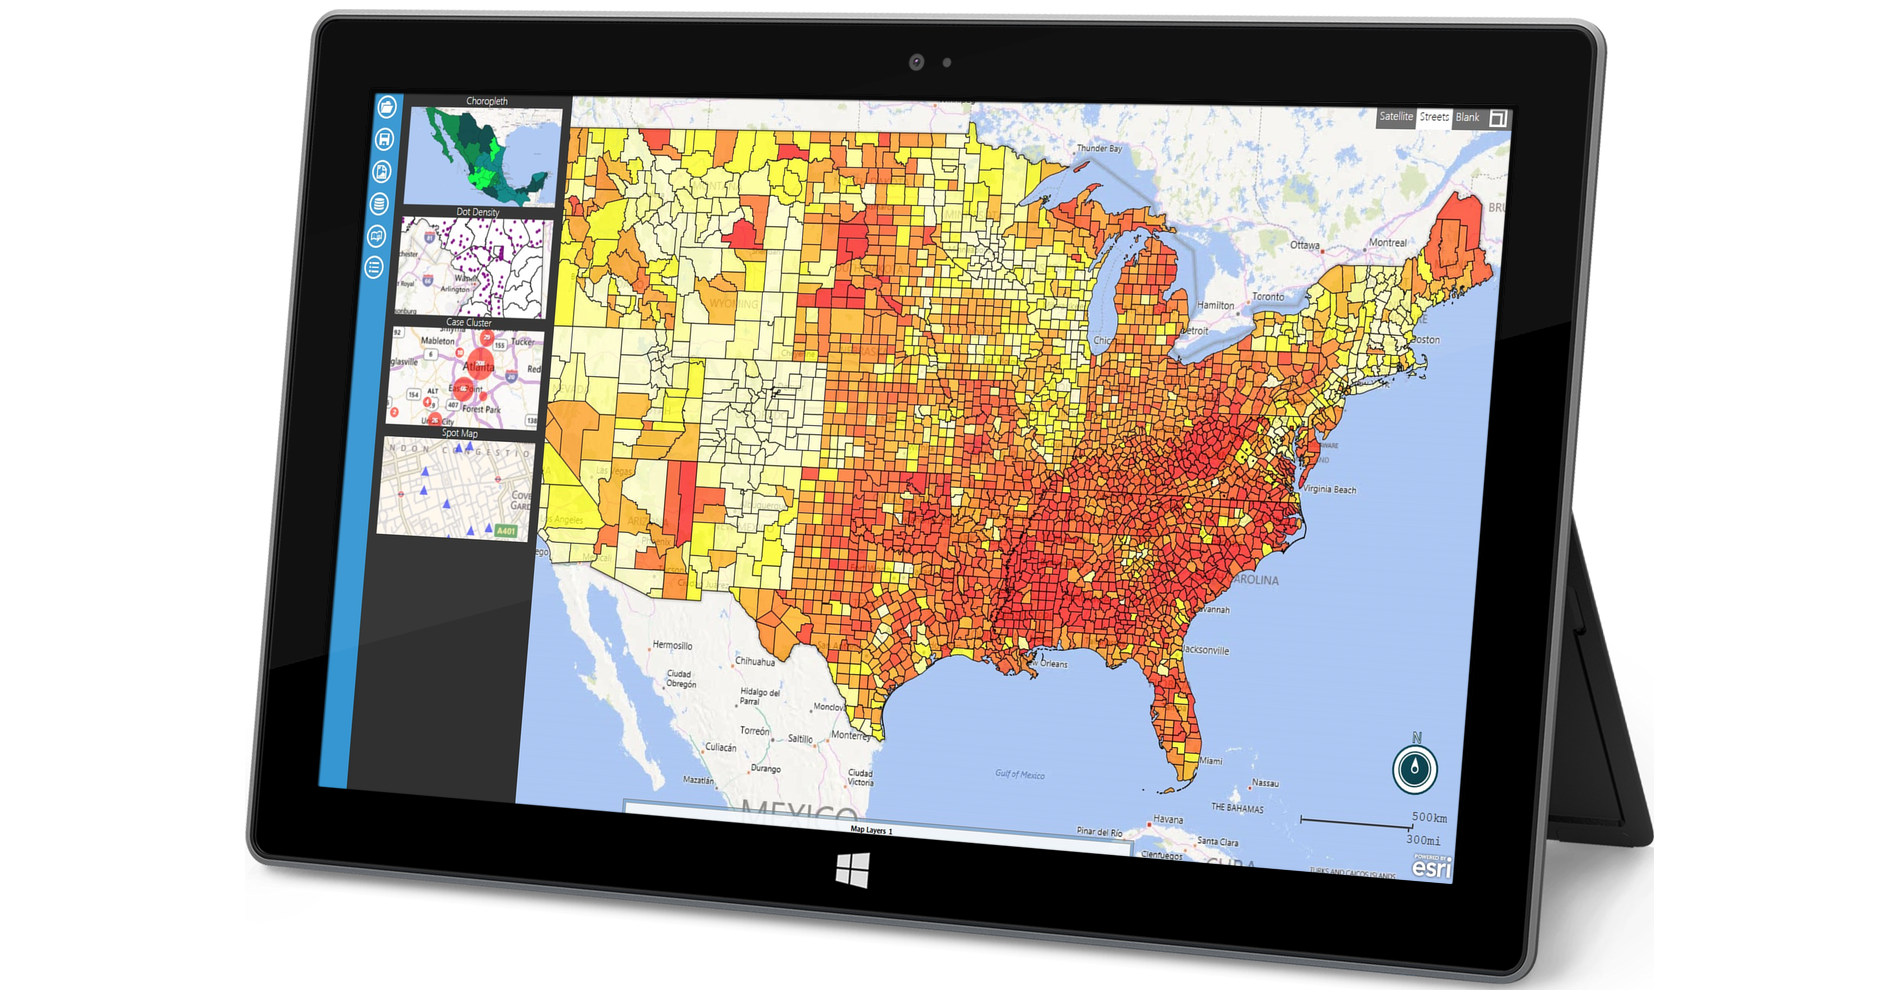  Módulo de mapas Epi Info ™ mostrado en Windows Surface